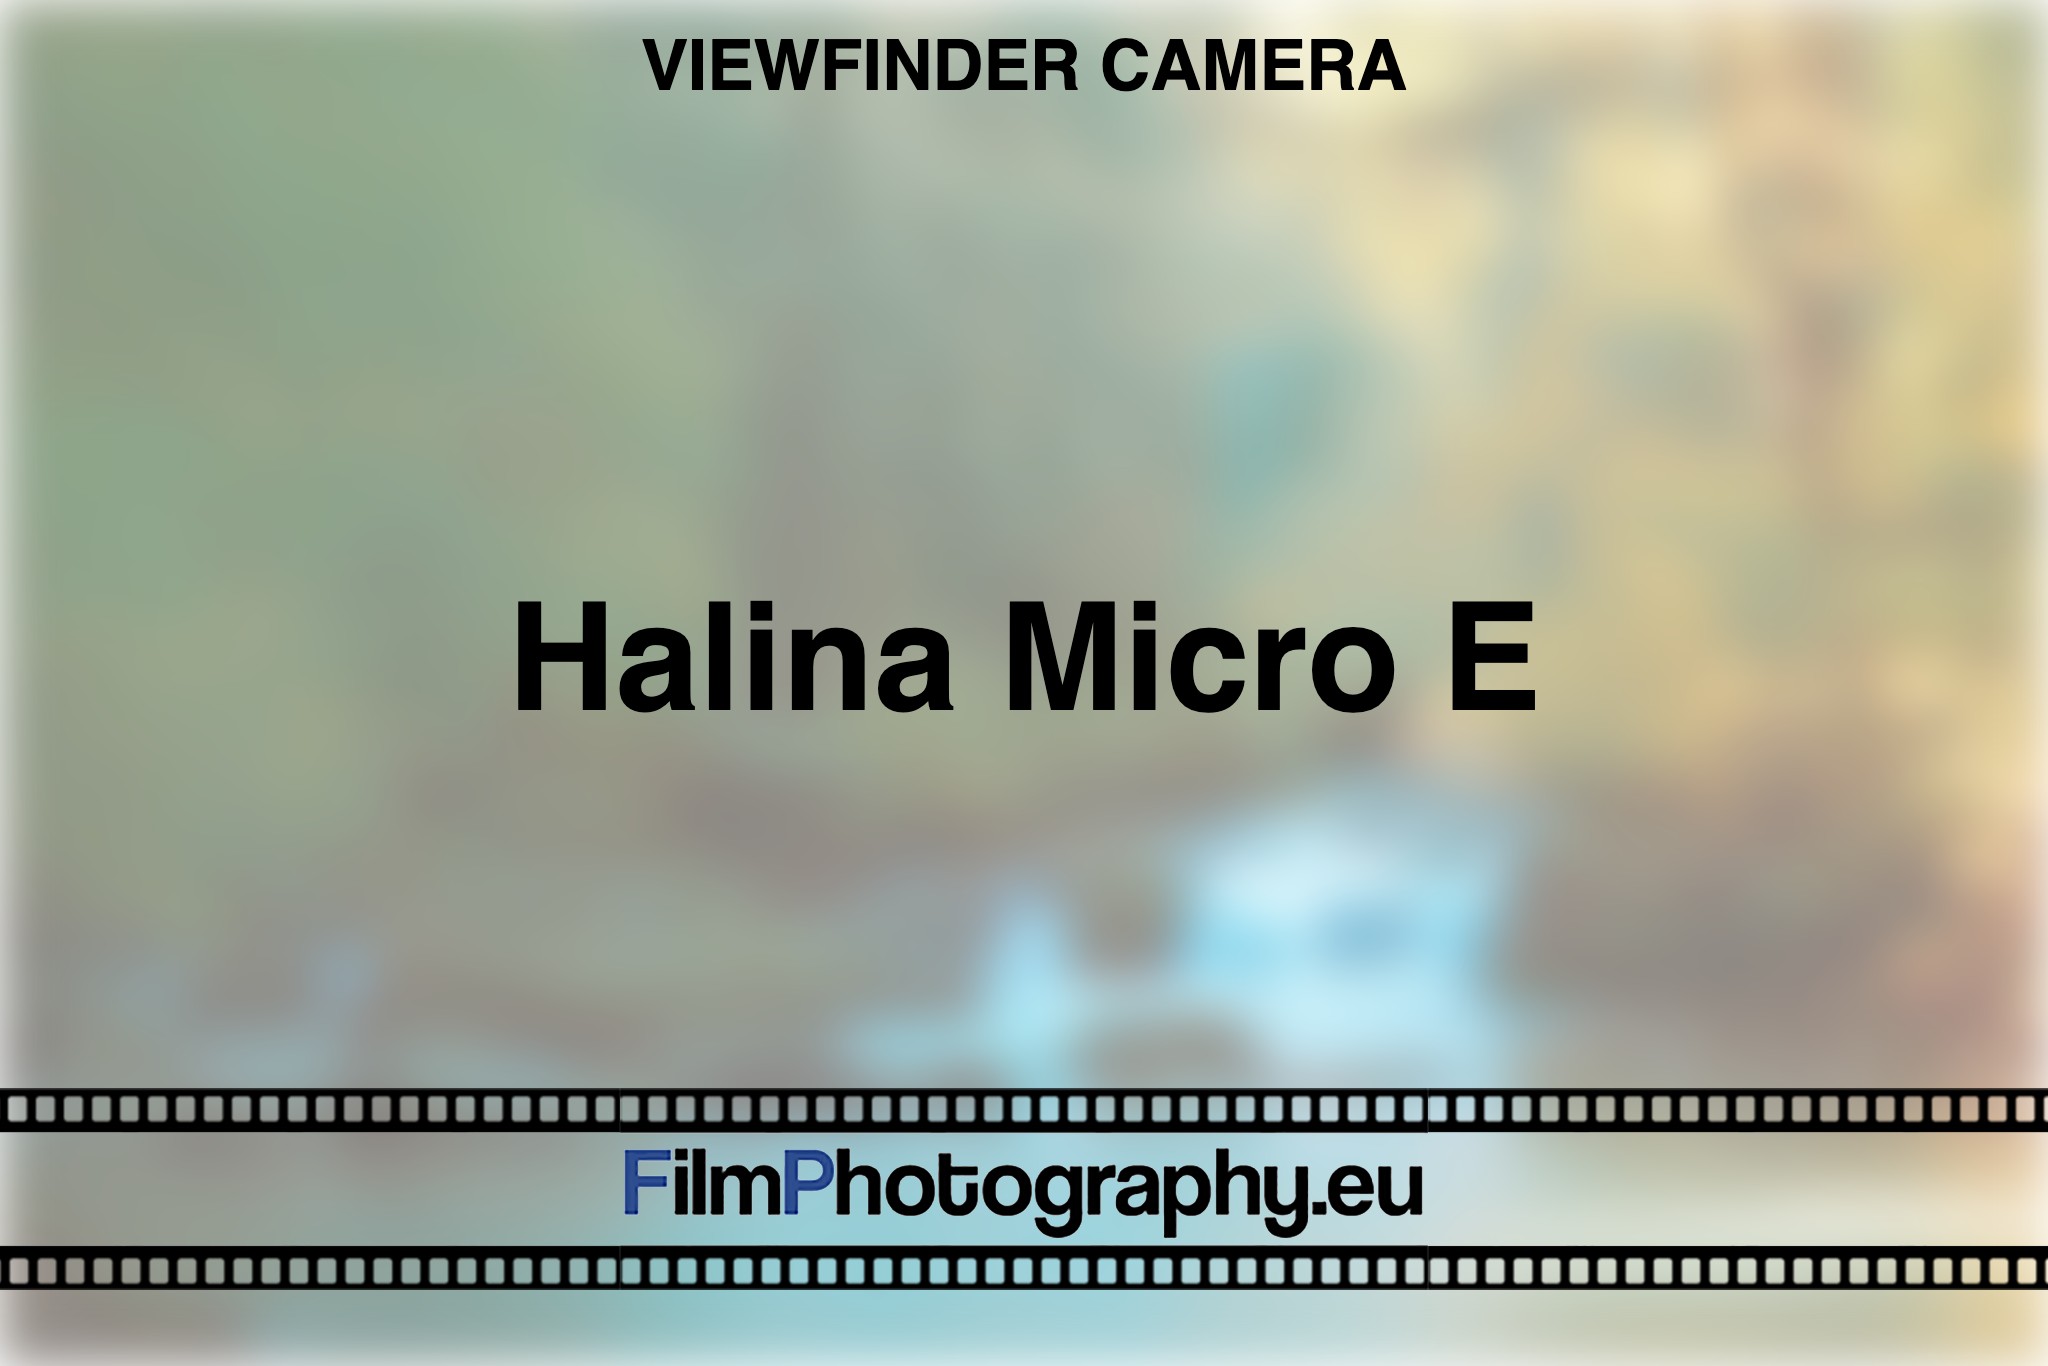 halina-micro-e-viewfinder-camera-bnv